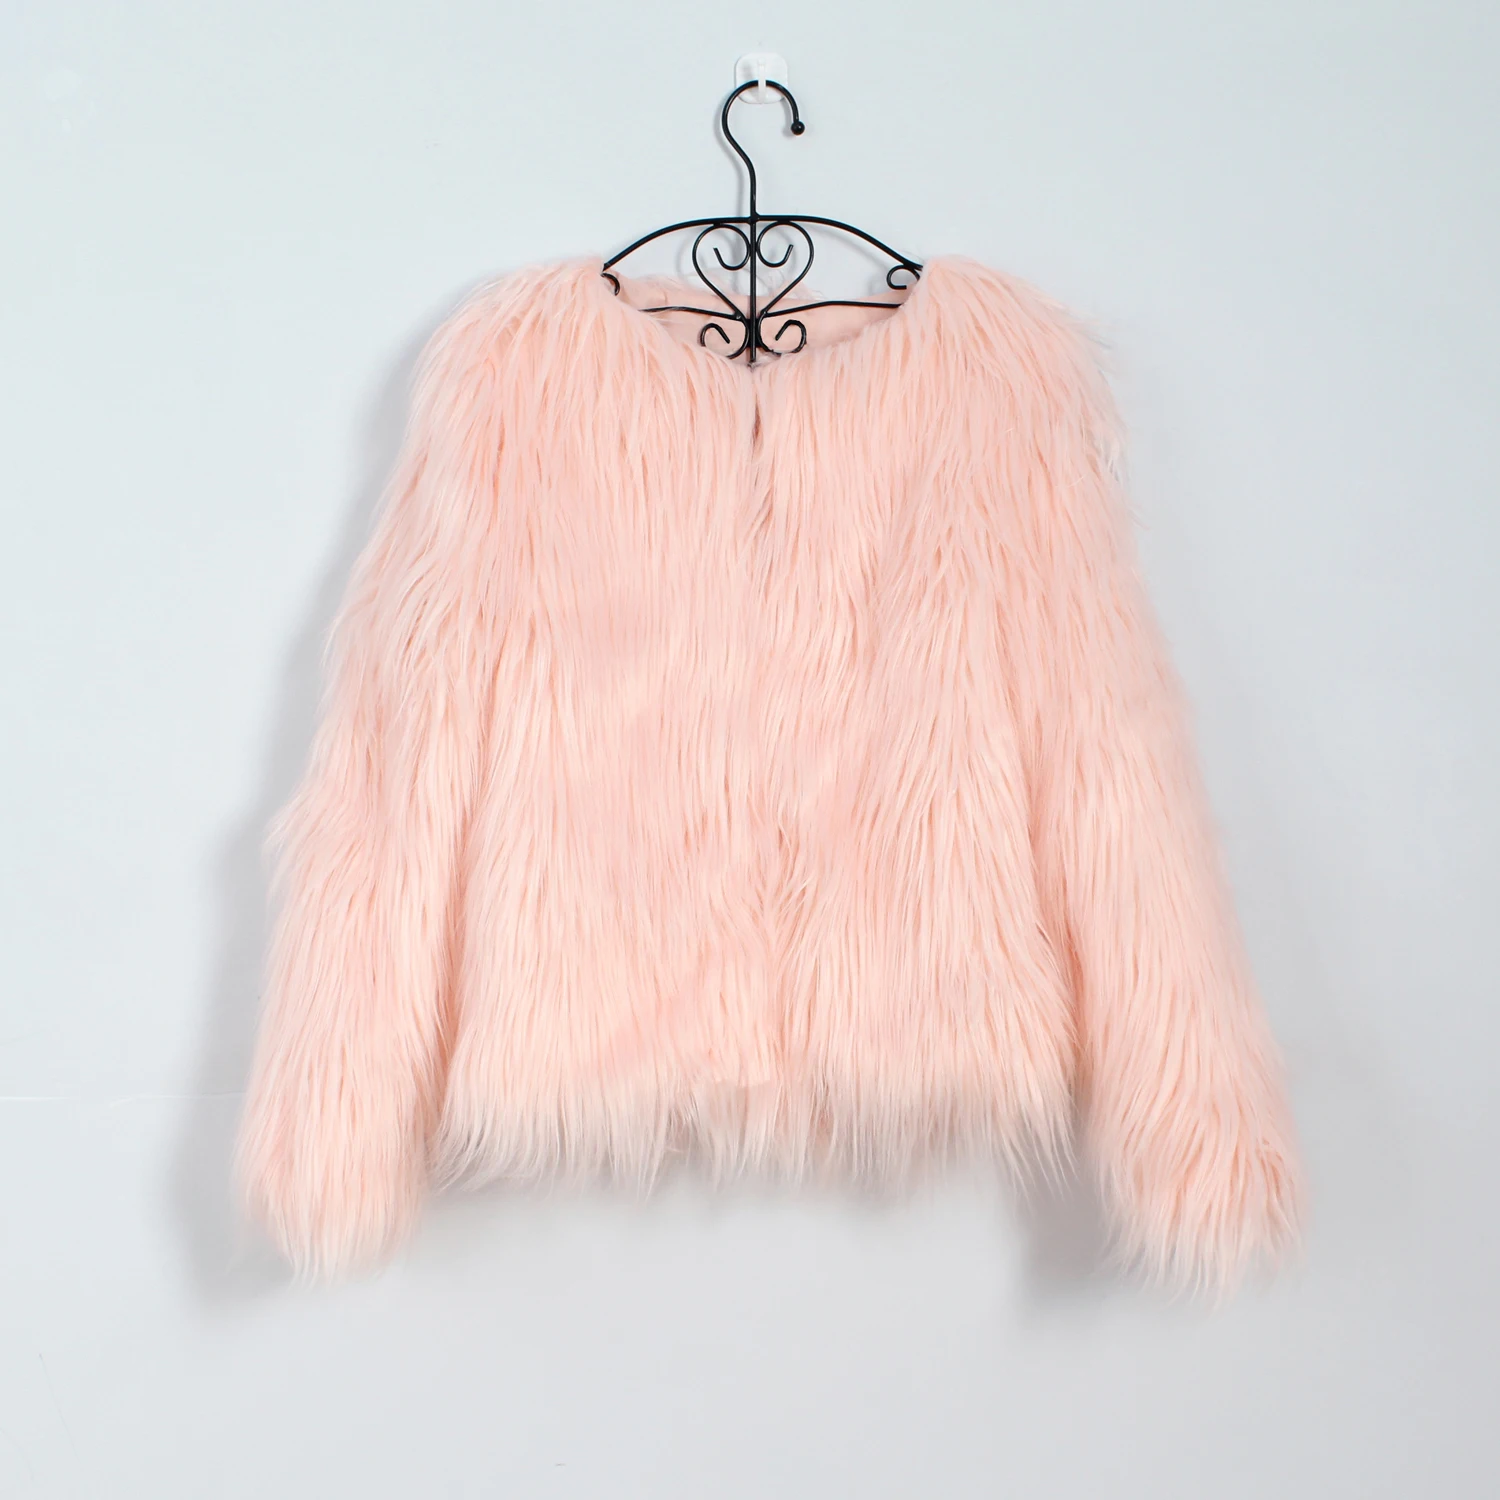 Плавающая куртка шуба для волос женская меховая шуба пальто из искусственного меха лисы Куртки пушистые вечерние шубка на меху плюс размер Xxxl - Цвет: pink